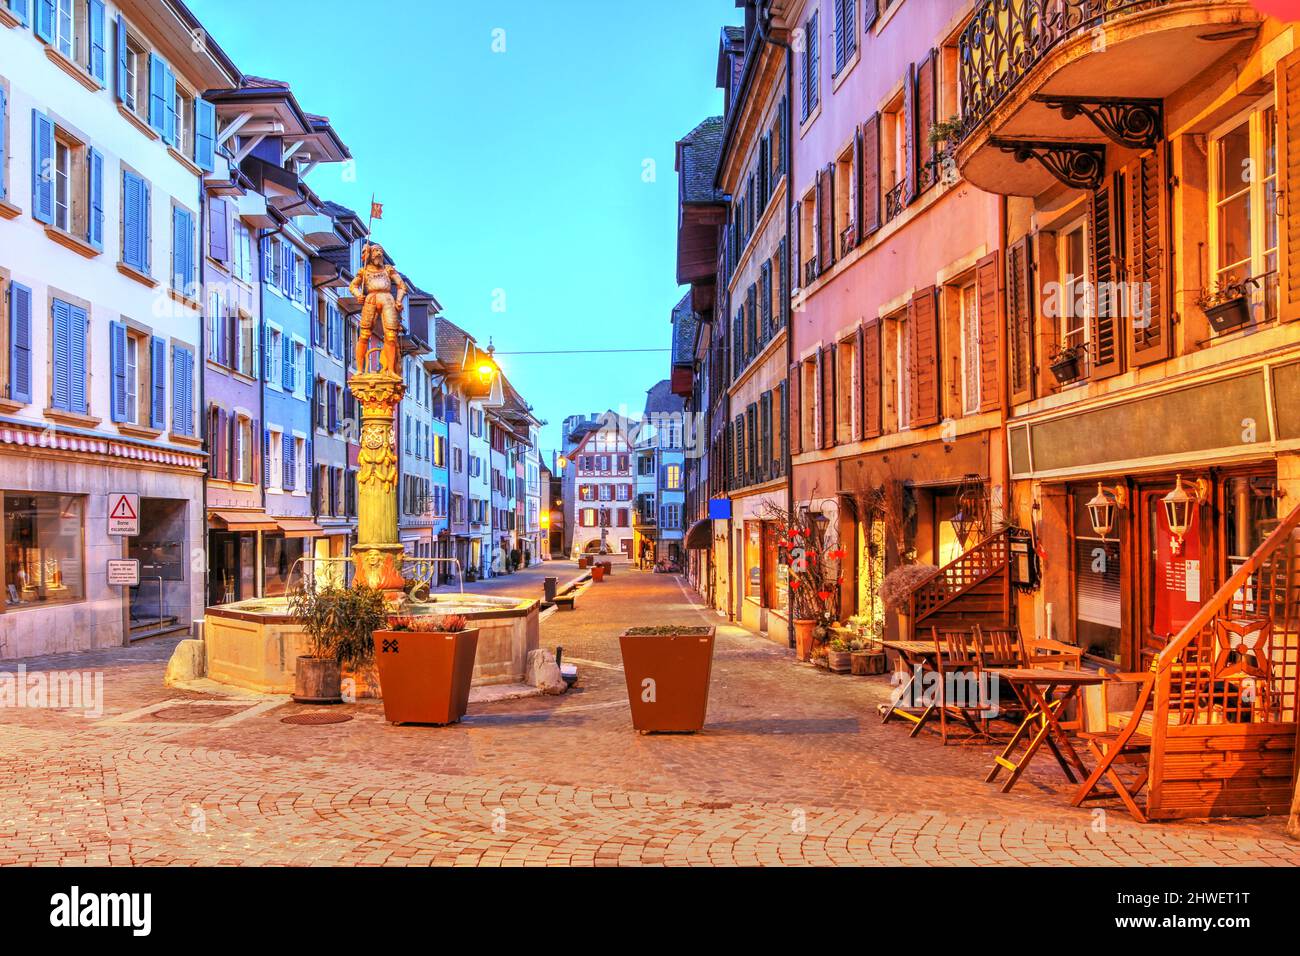 Scena notturna in Place du Marche nell'affascinante città medievale di la Neuville, situato tra Neuchatel e Biel / Bienne sulle rive del lago di Biel An Foto Stock